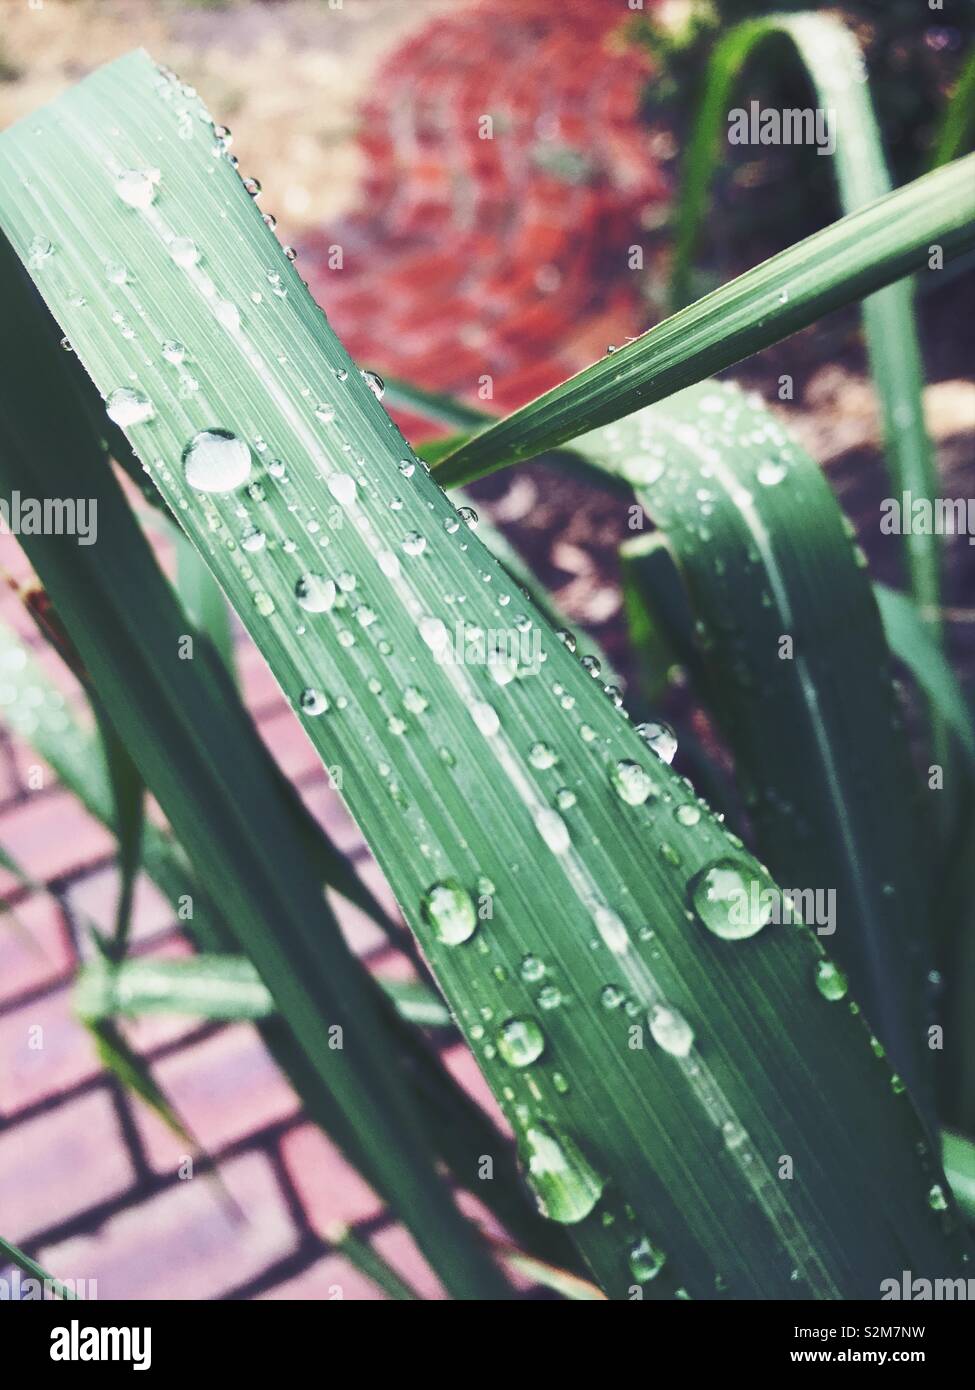 Una vista de primer plano de las gotas de agua sobre una hoja de hierba de limón. Un poco borrosa pavimento de ladrillo marrón-rojizo en el fondo. Foto de stock